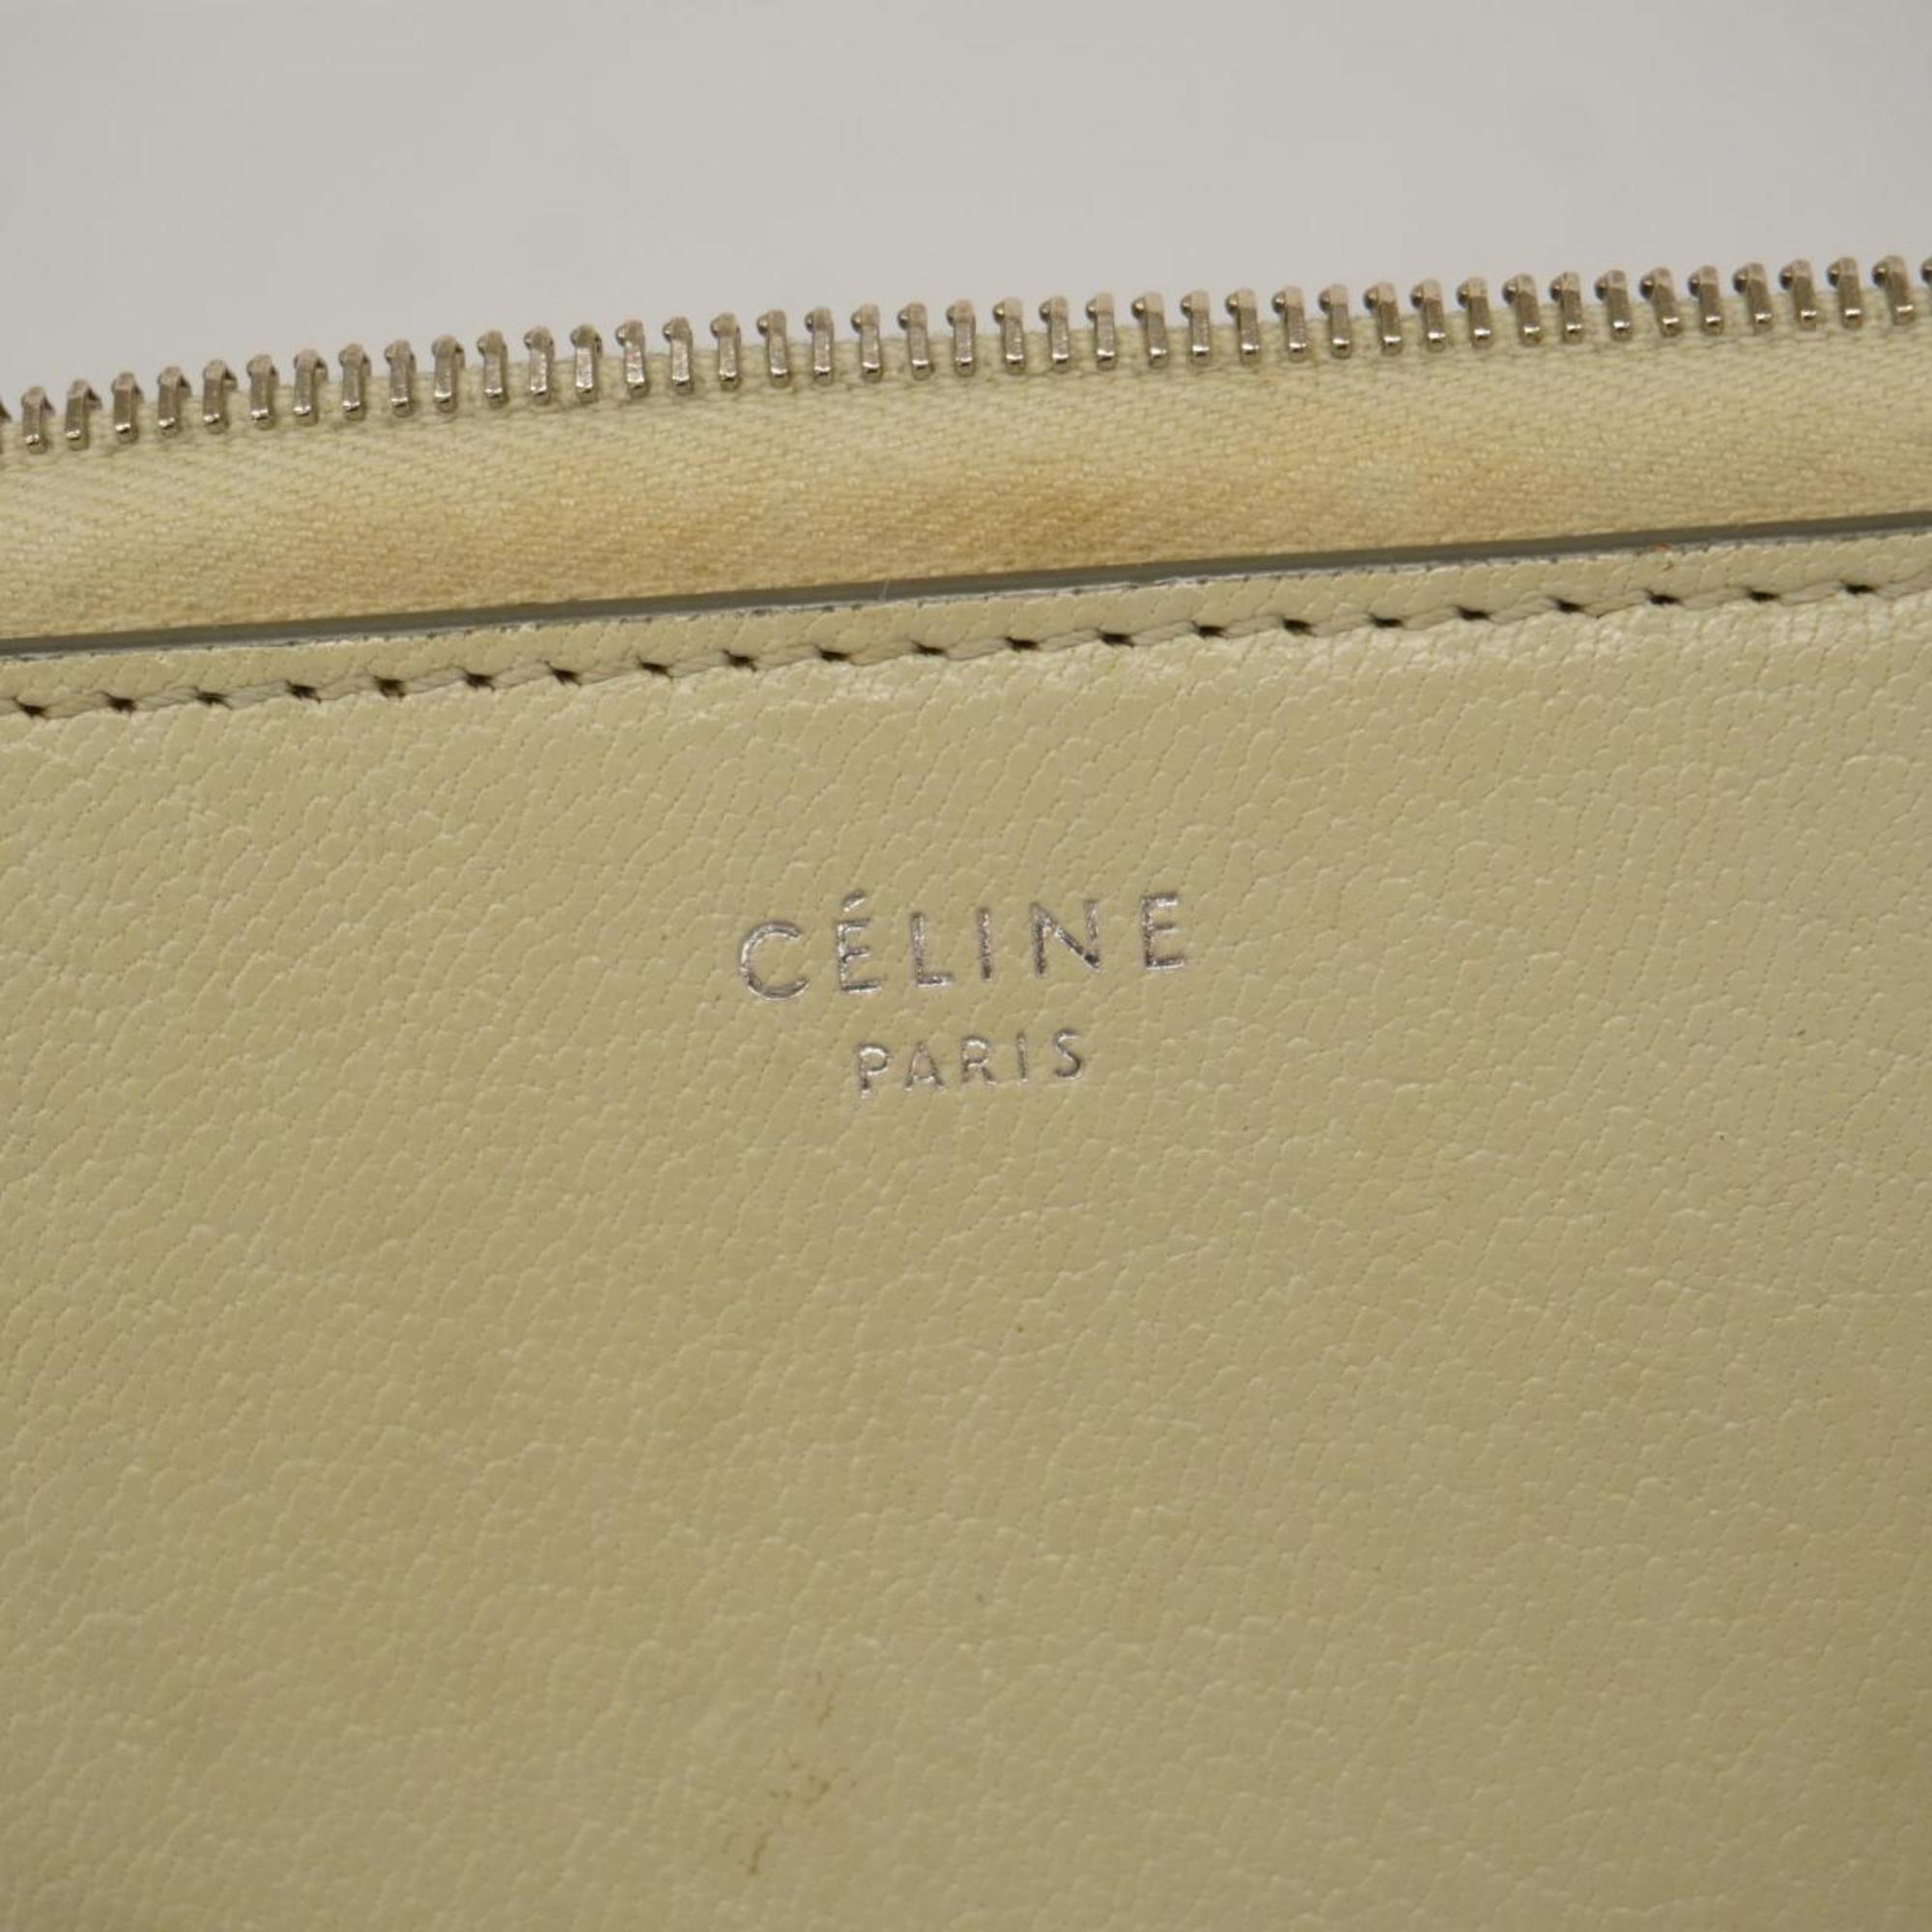 Celine long wallet leather ivory women's